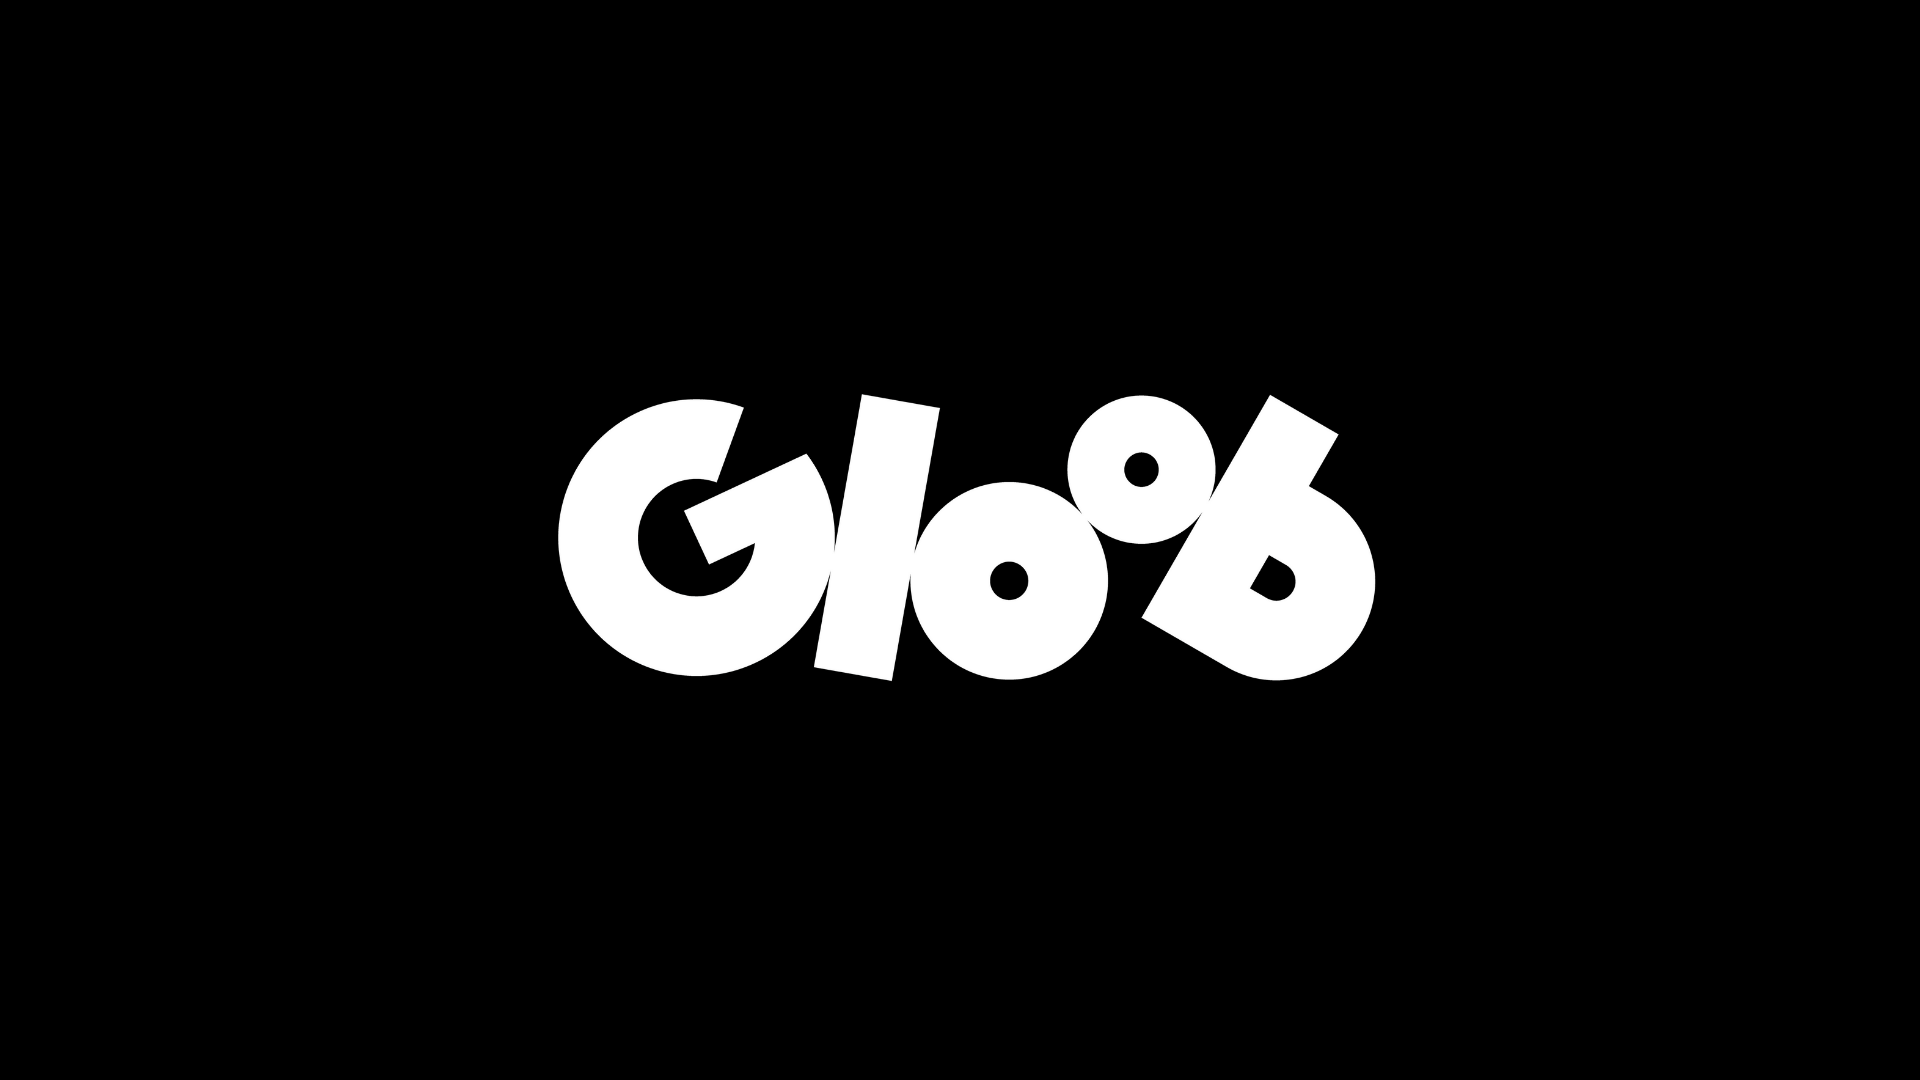 Gloob ao vivo,Gloob online,assistir Gloob,assistir Gloob ao vivo,assistir Gloob online,Gloob gratis,assistir Gloob gratis,ao vivo online,ao vivo gratis,ver Gloob,ver Gloob ao vivo,ver Gloob online,24 horas,24h,multicanais,piratetv,piratatvs.com